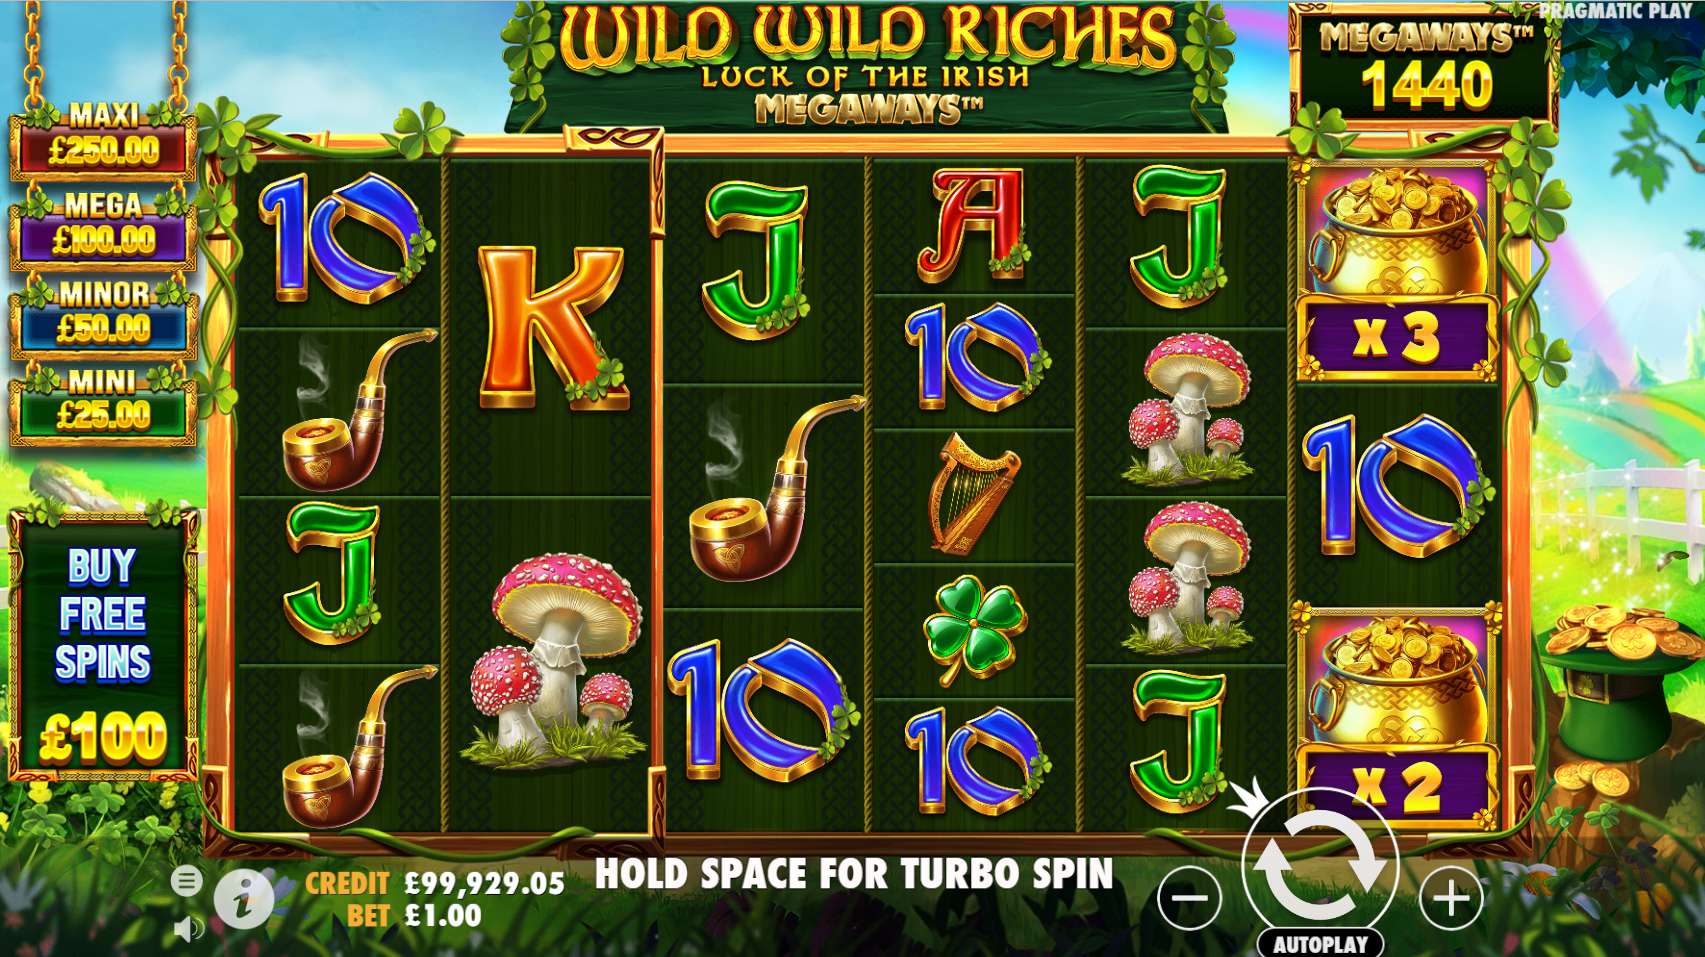 Wild Wild Riches Megaways pragmatic play slot online demo